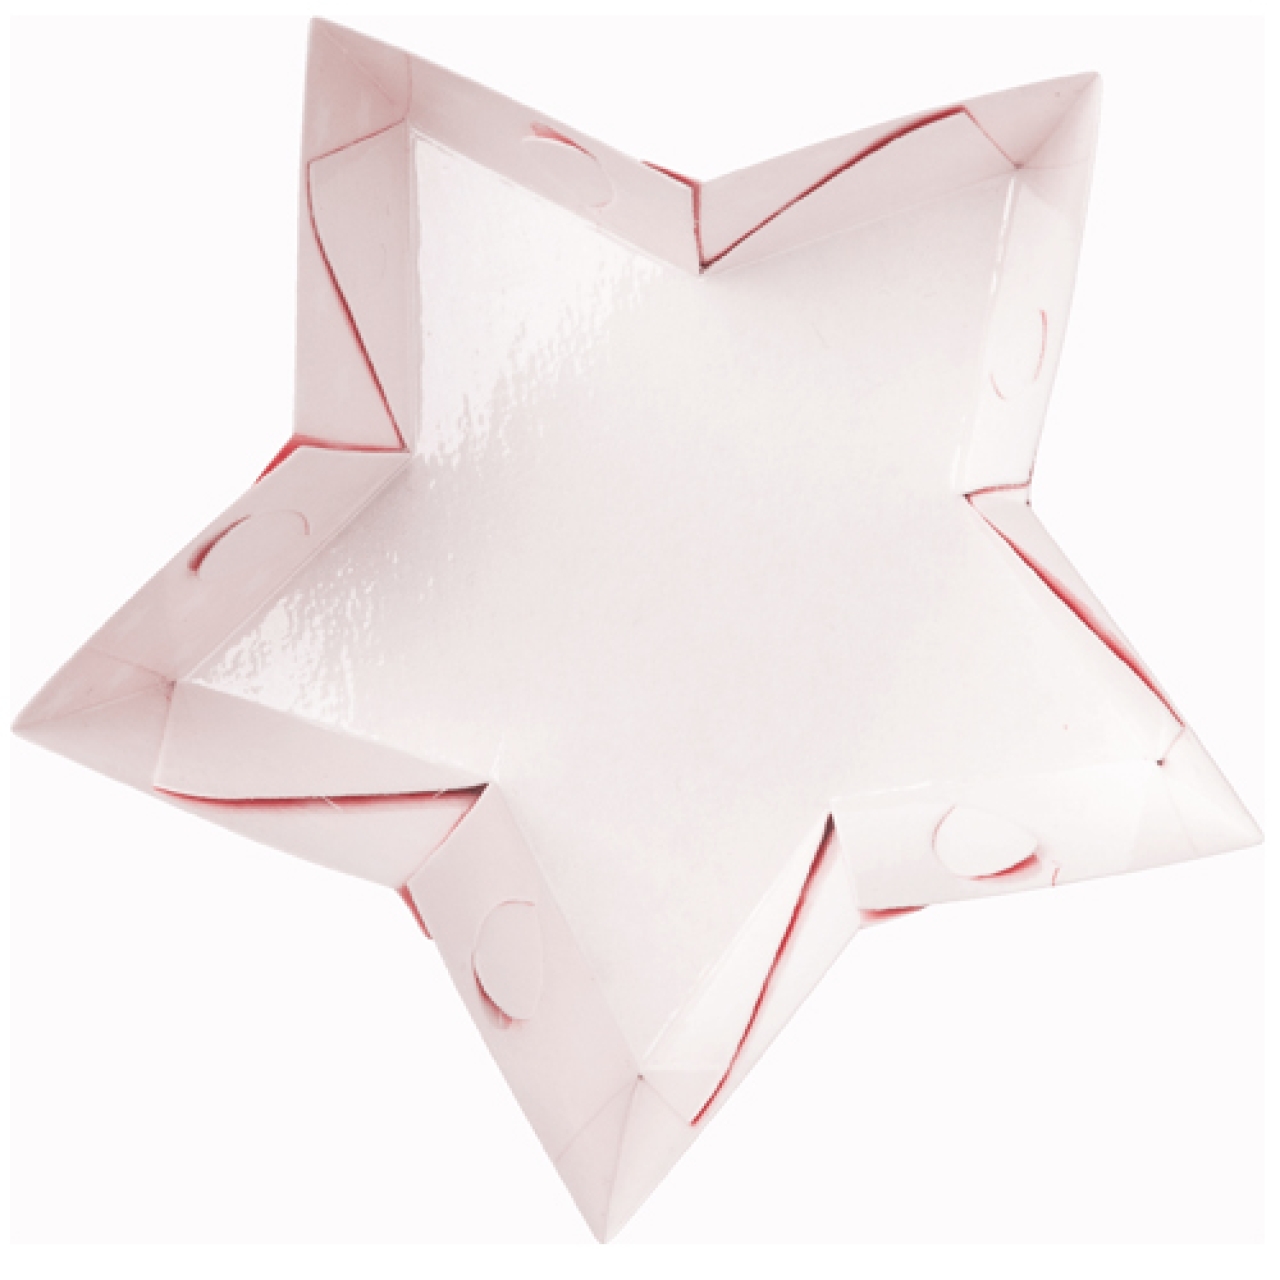 Papierbackformen "Stern", Rot, 10 Stück